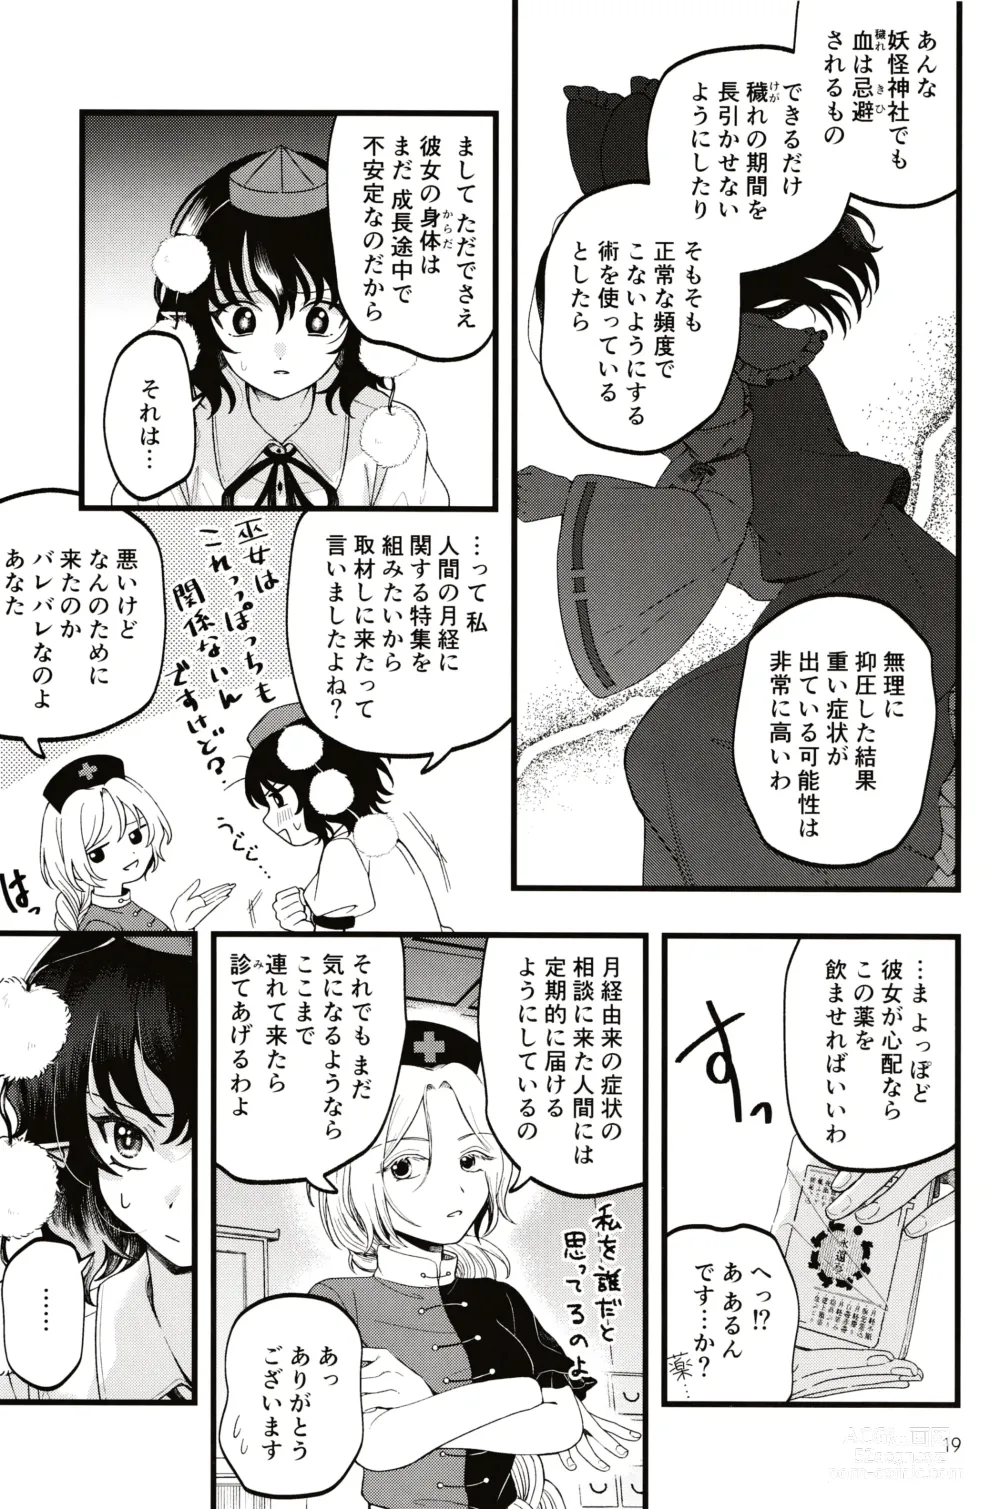 Page 18 of doujinshi Rubeus no Kankai